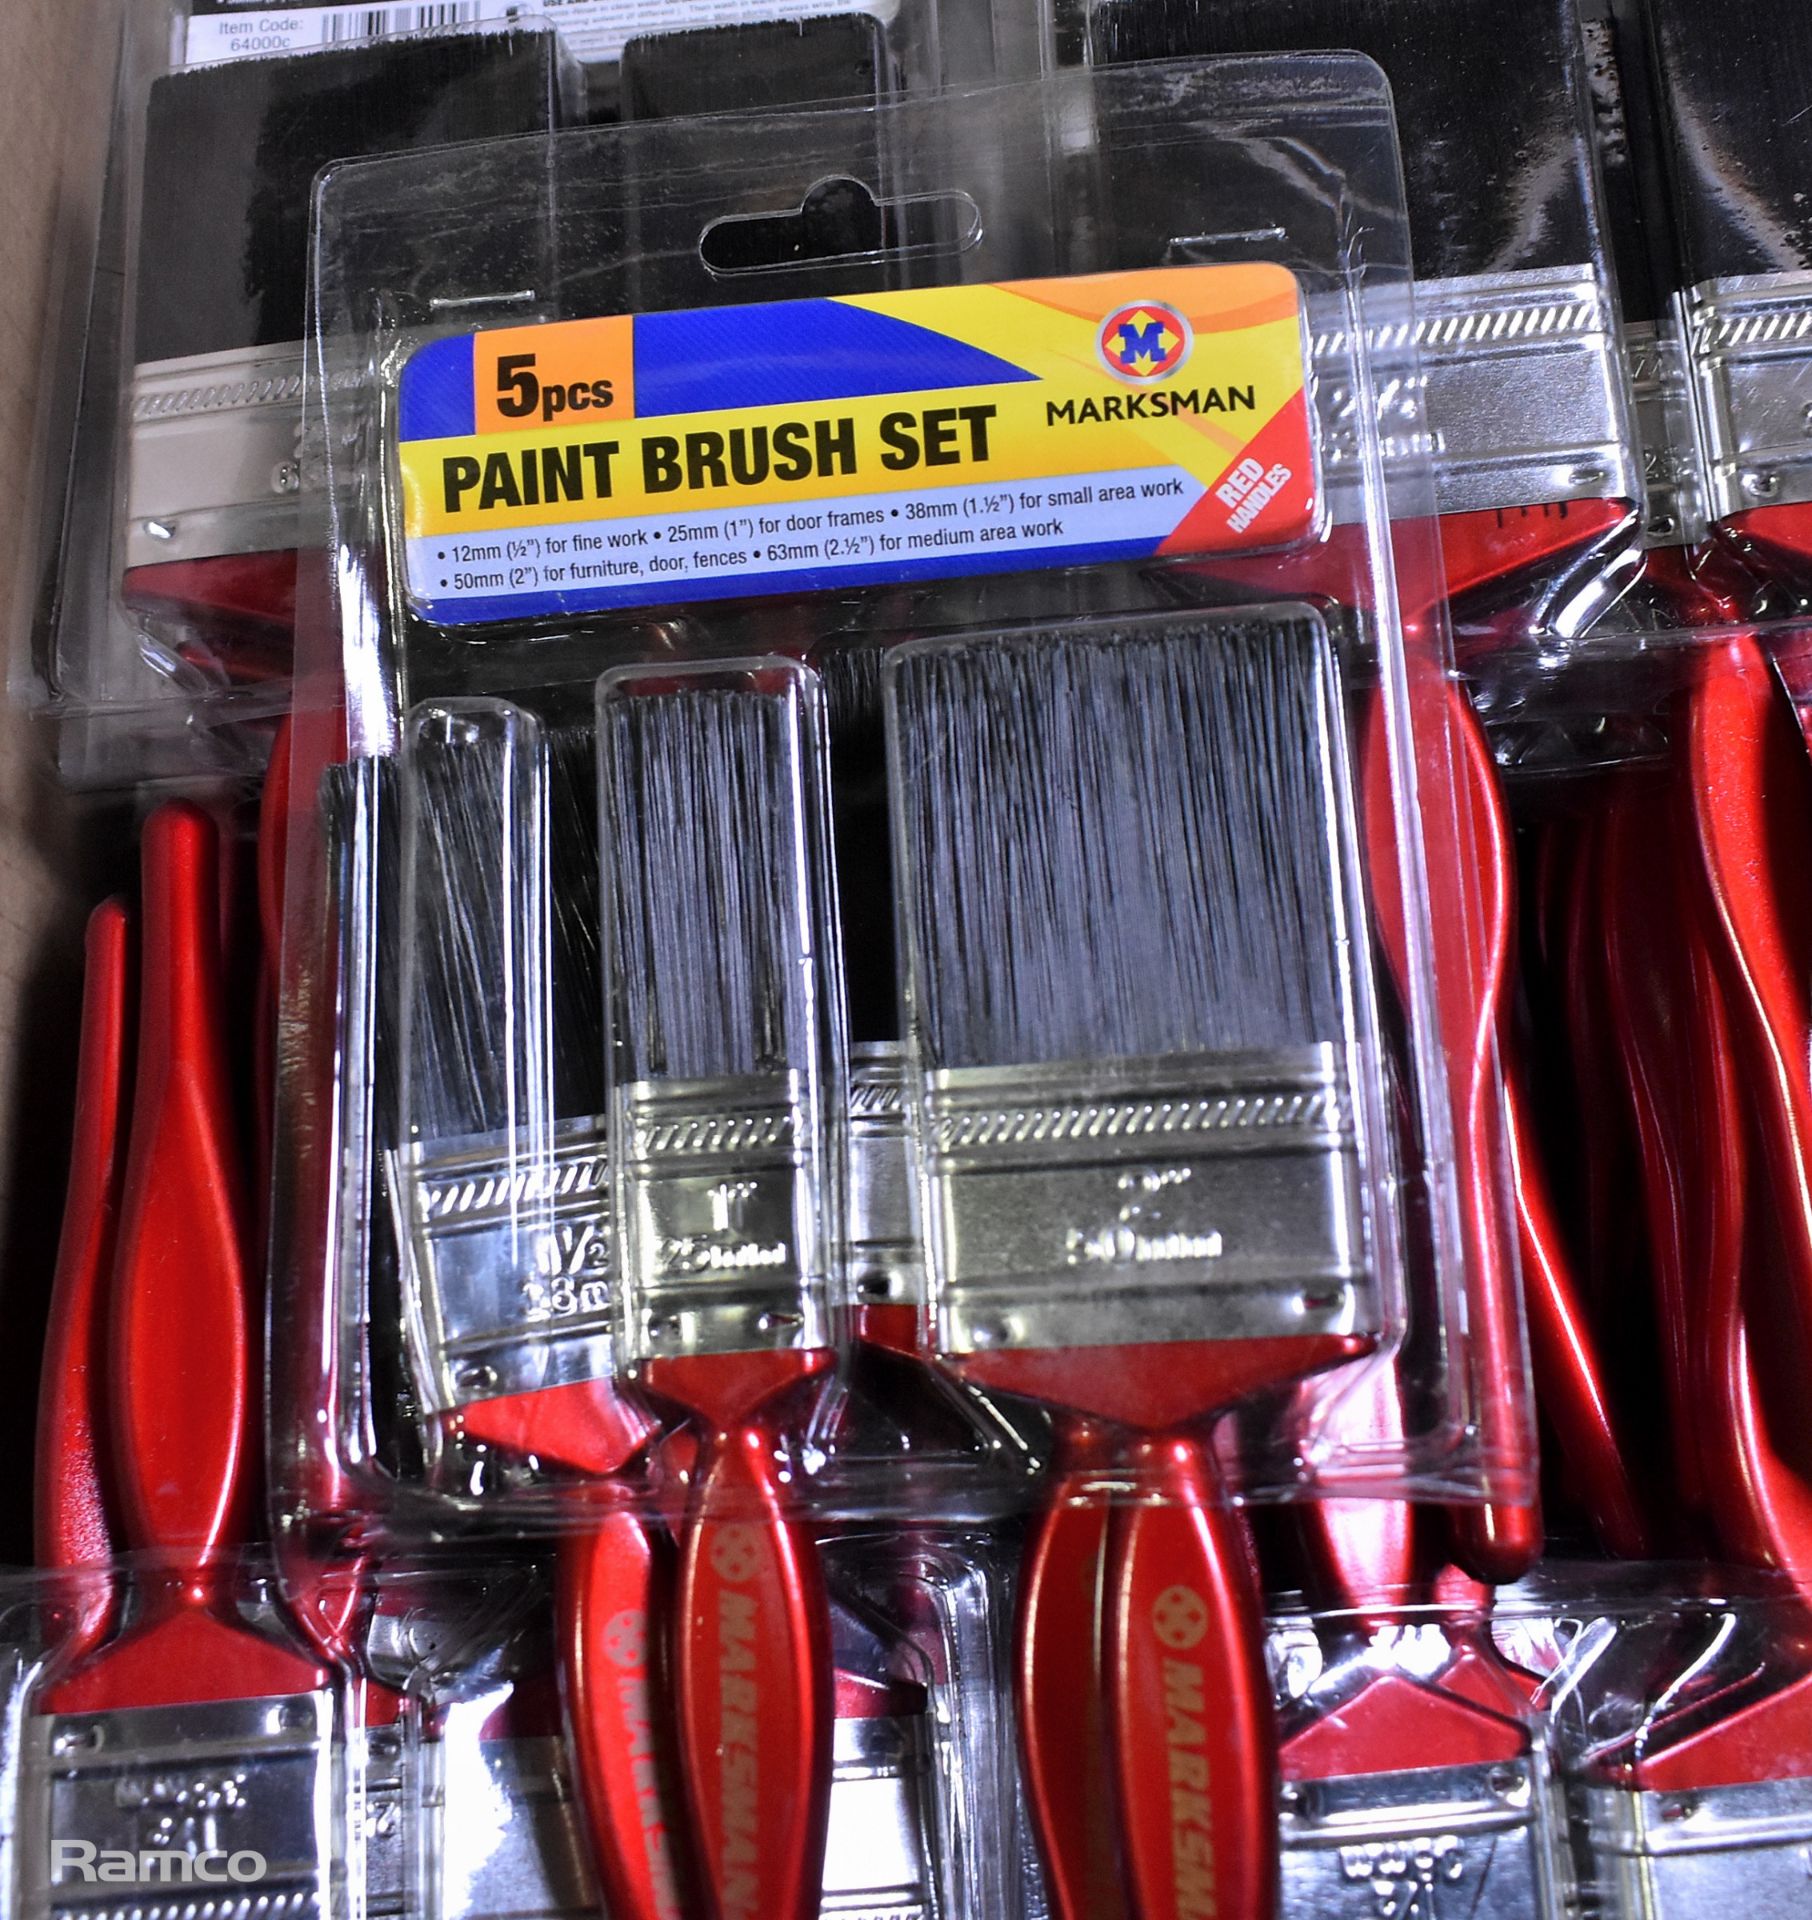 Marksman paint brushees - 5 per pack - 48 packs - Image 2 of 3